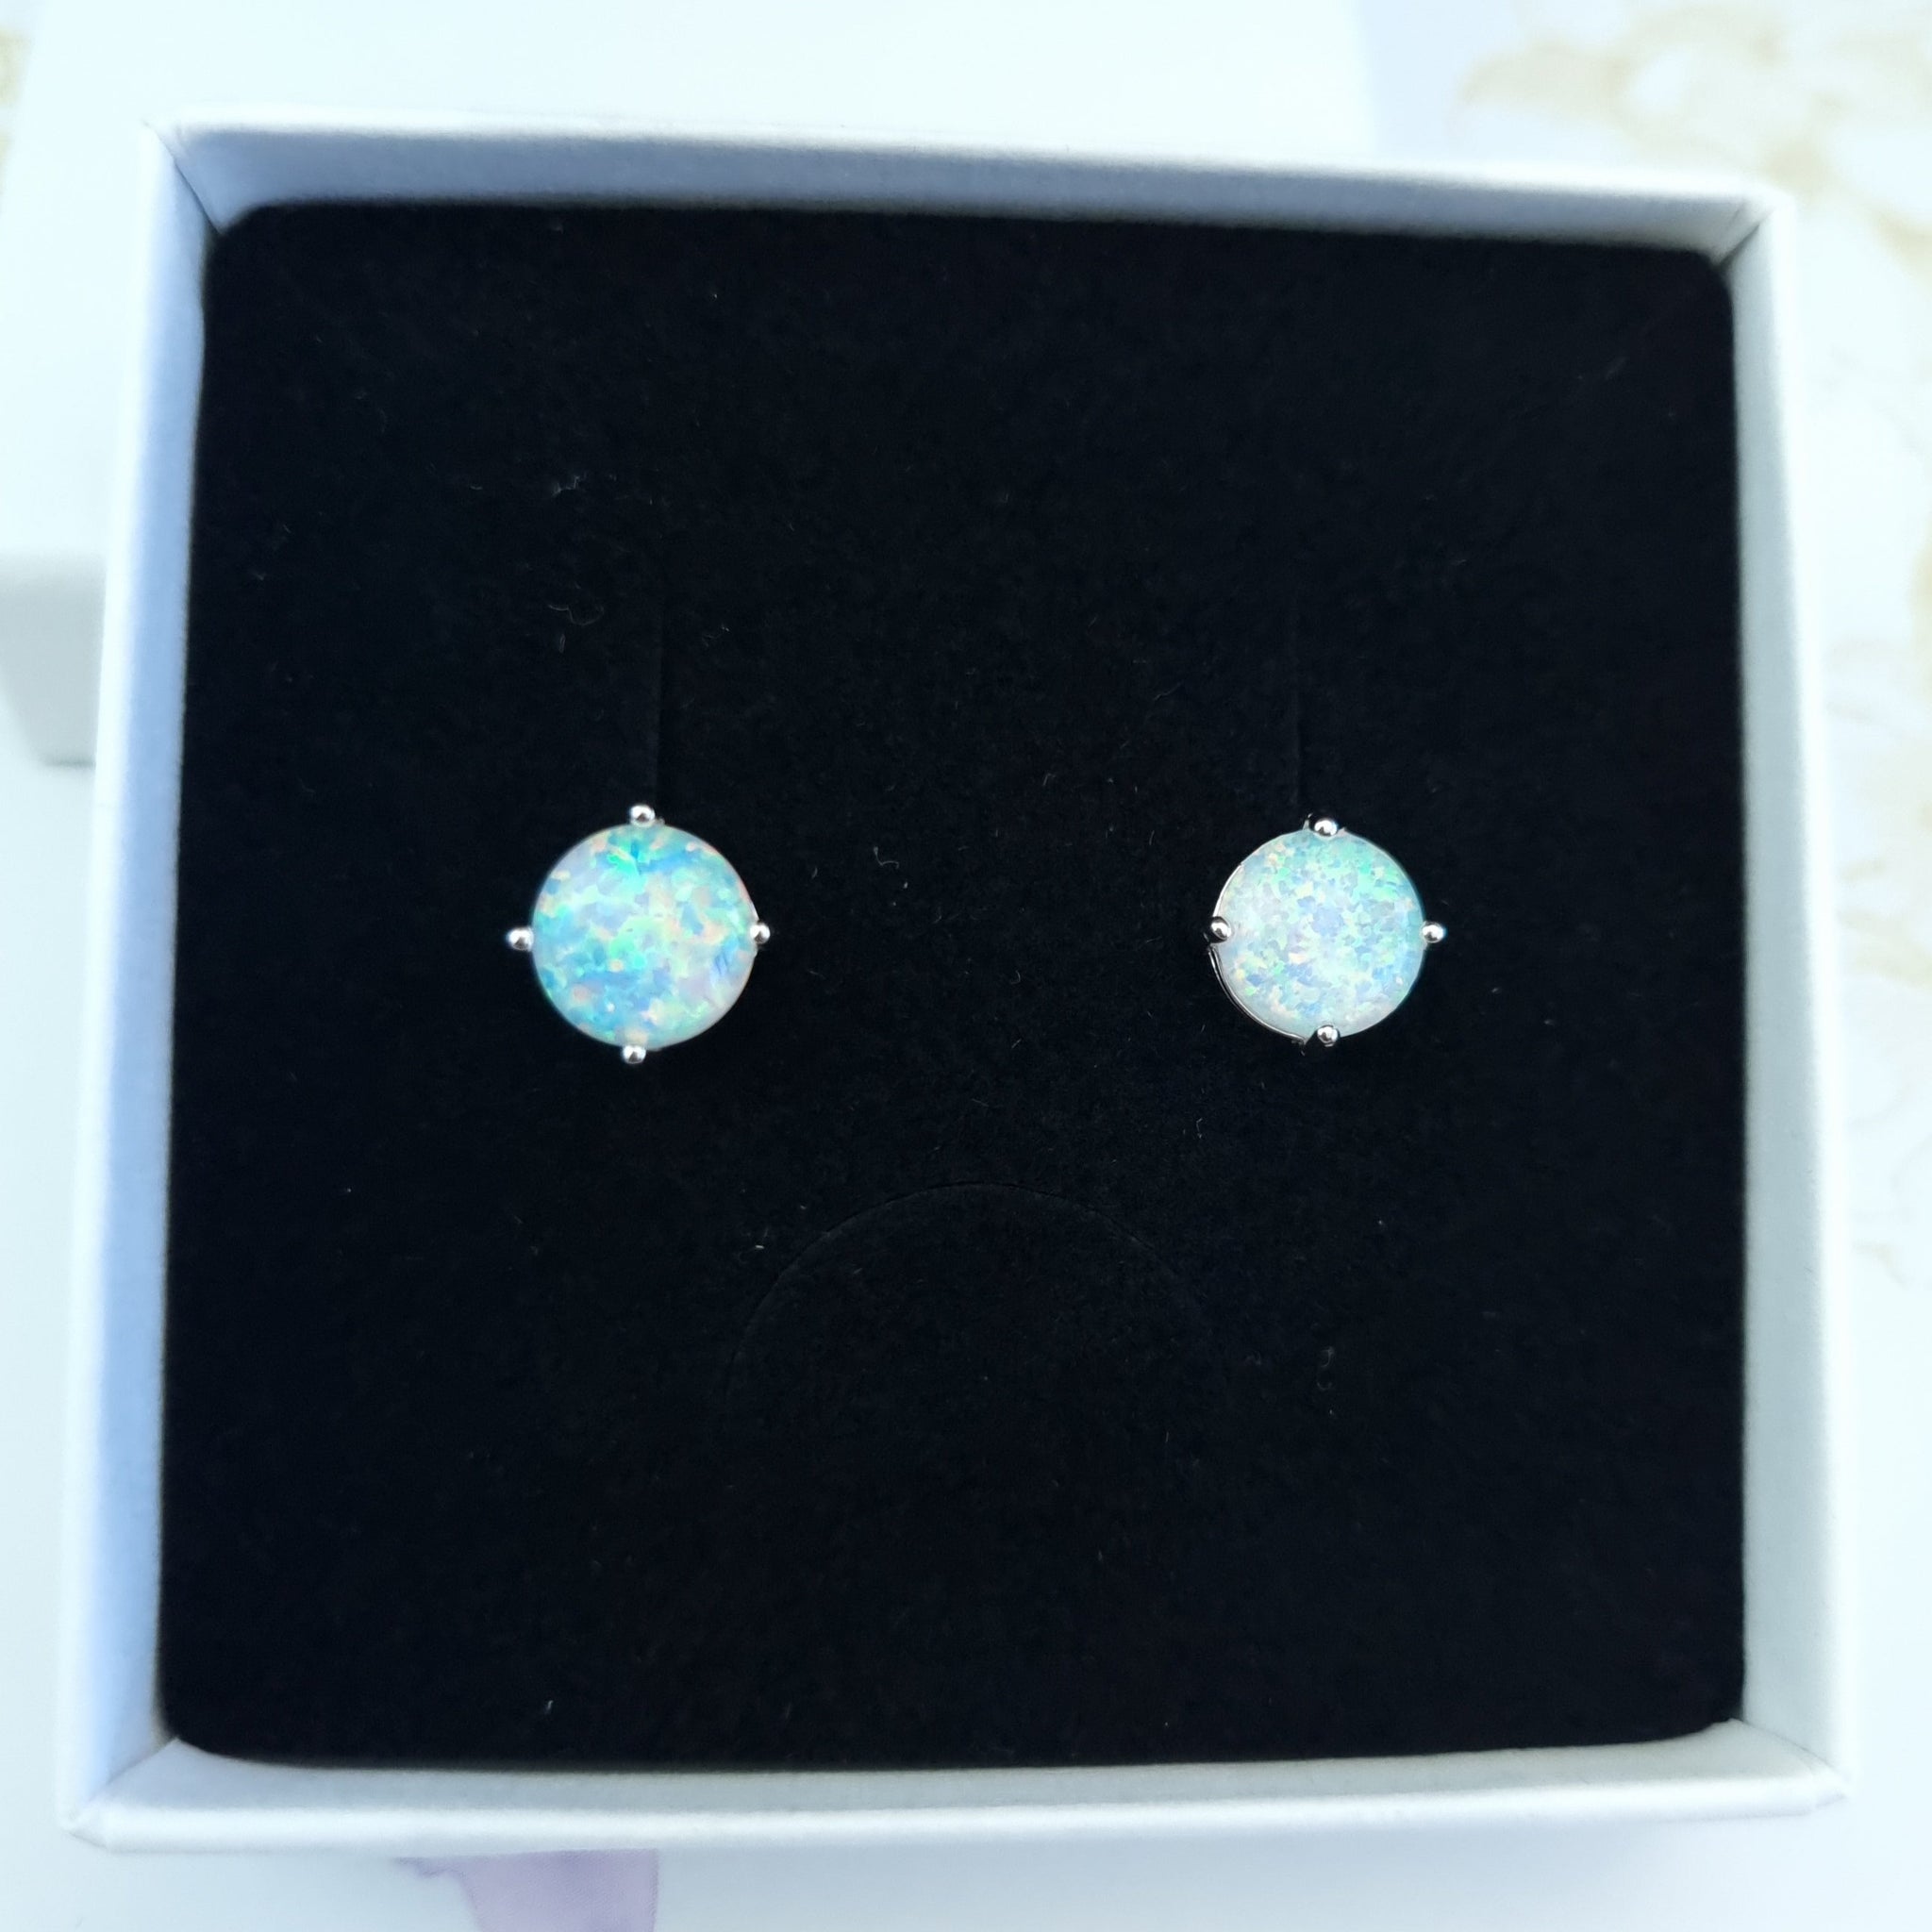 Opal stud earrings in sterling silver